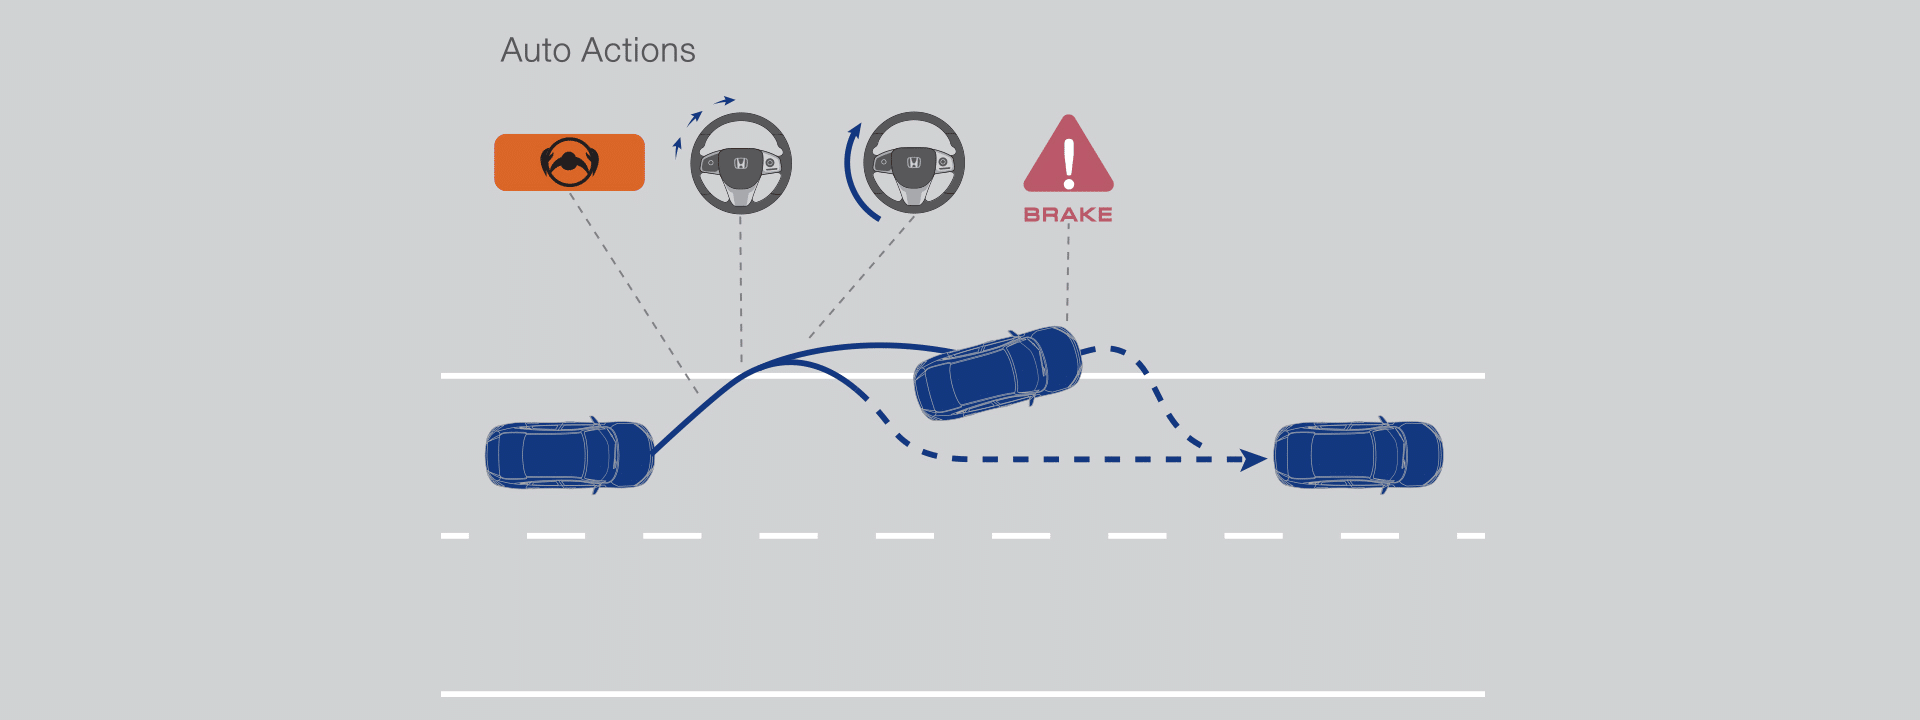 เทคโนโลยีความปลอดภัย Honda Sensing (TURBO RS) มีอะไรบ้าง